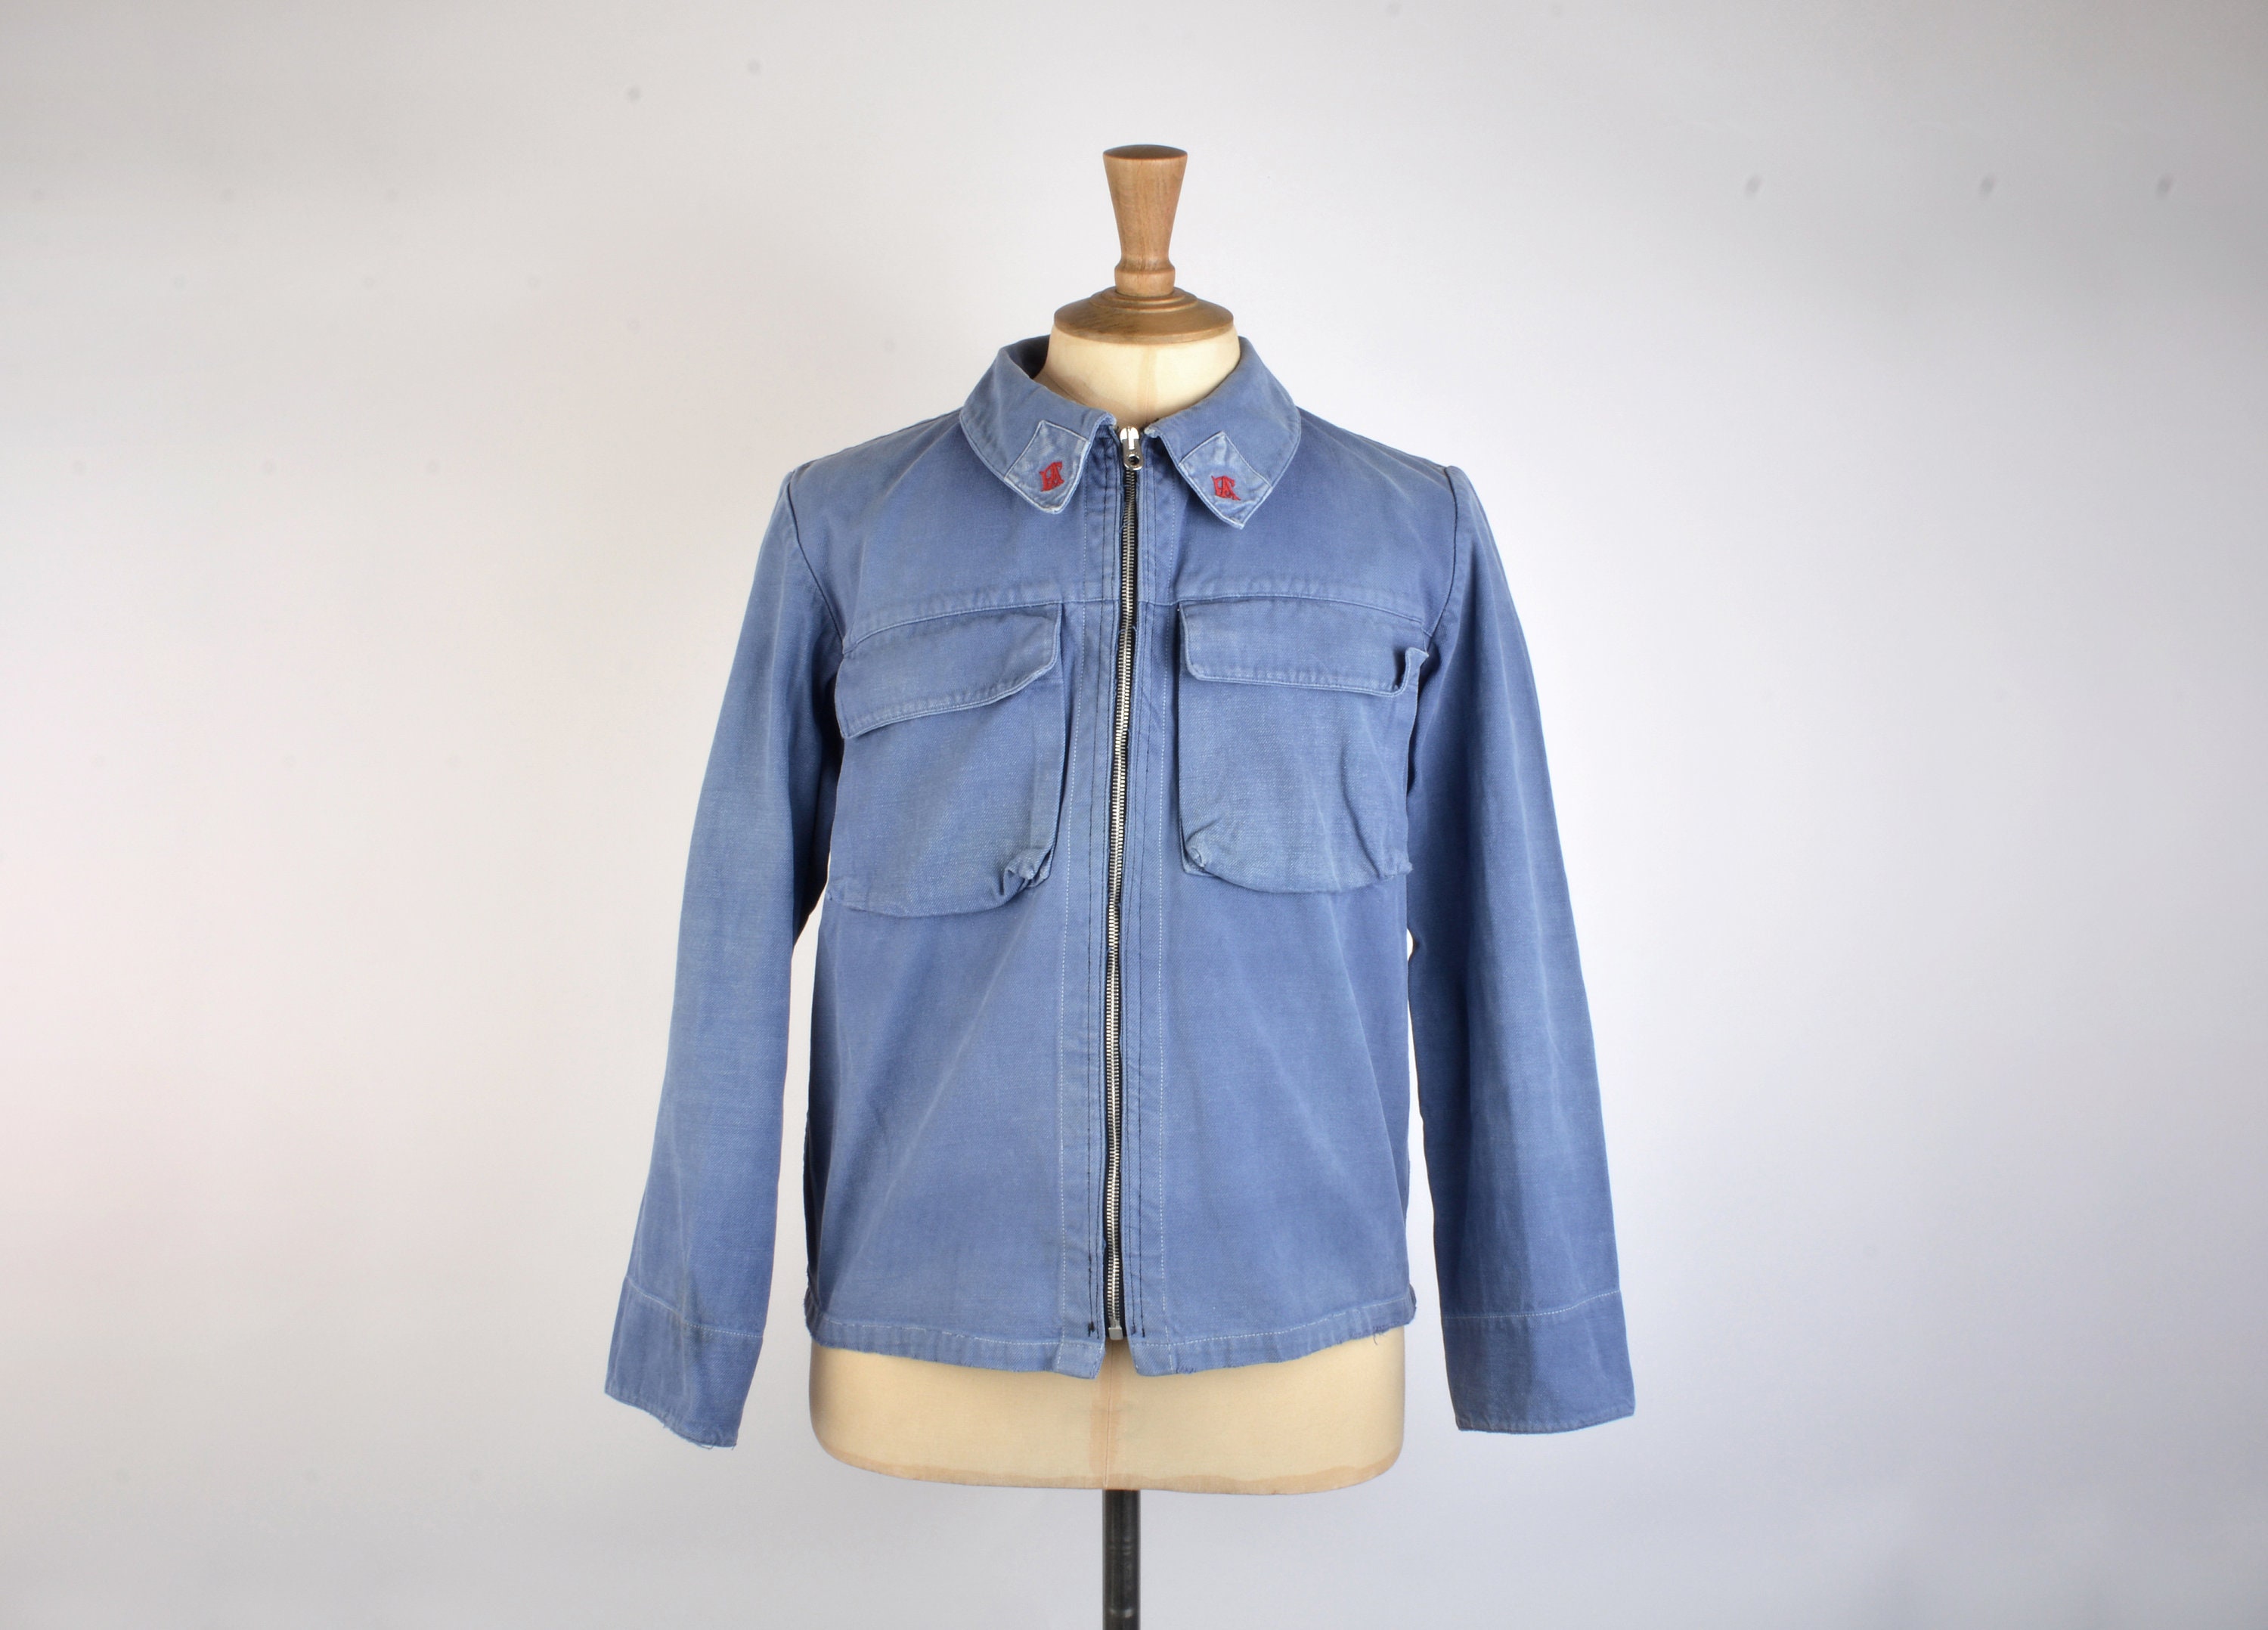 DAXON 1981-1982 vêtements de travail homme, cotte à bretelles